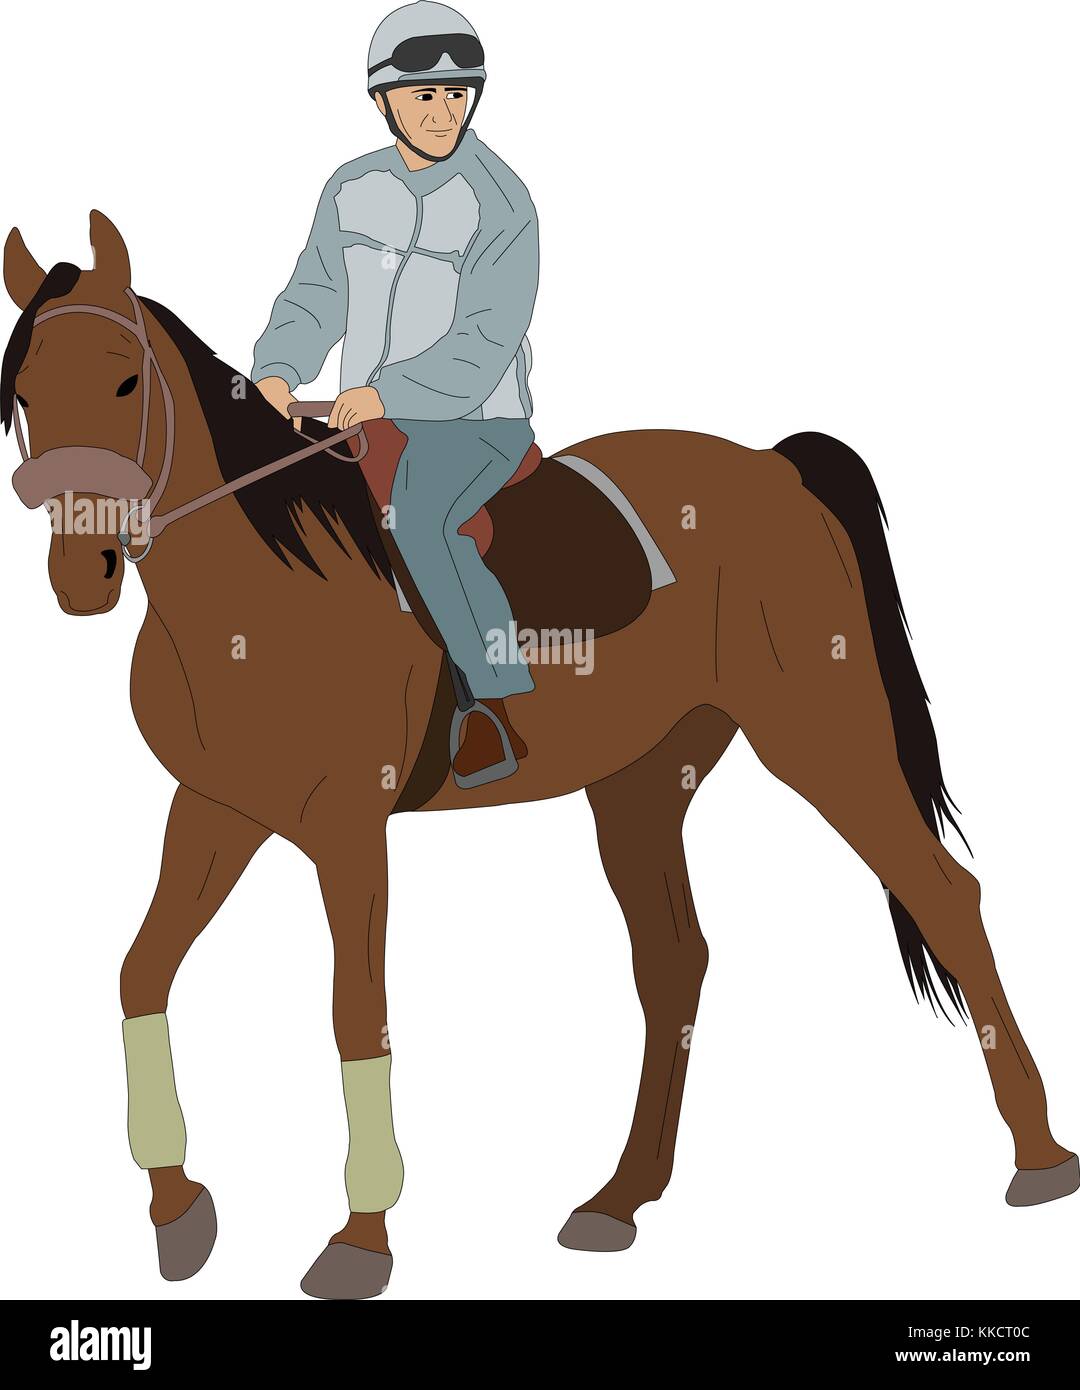 man riding a horse - vector illustration Stock Vector